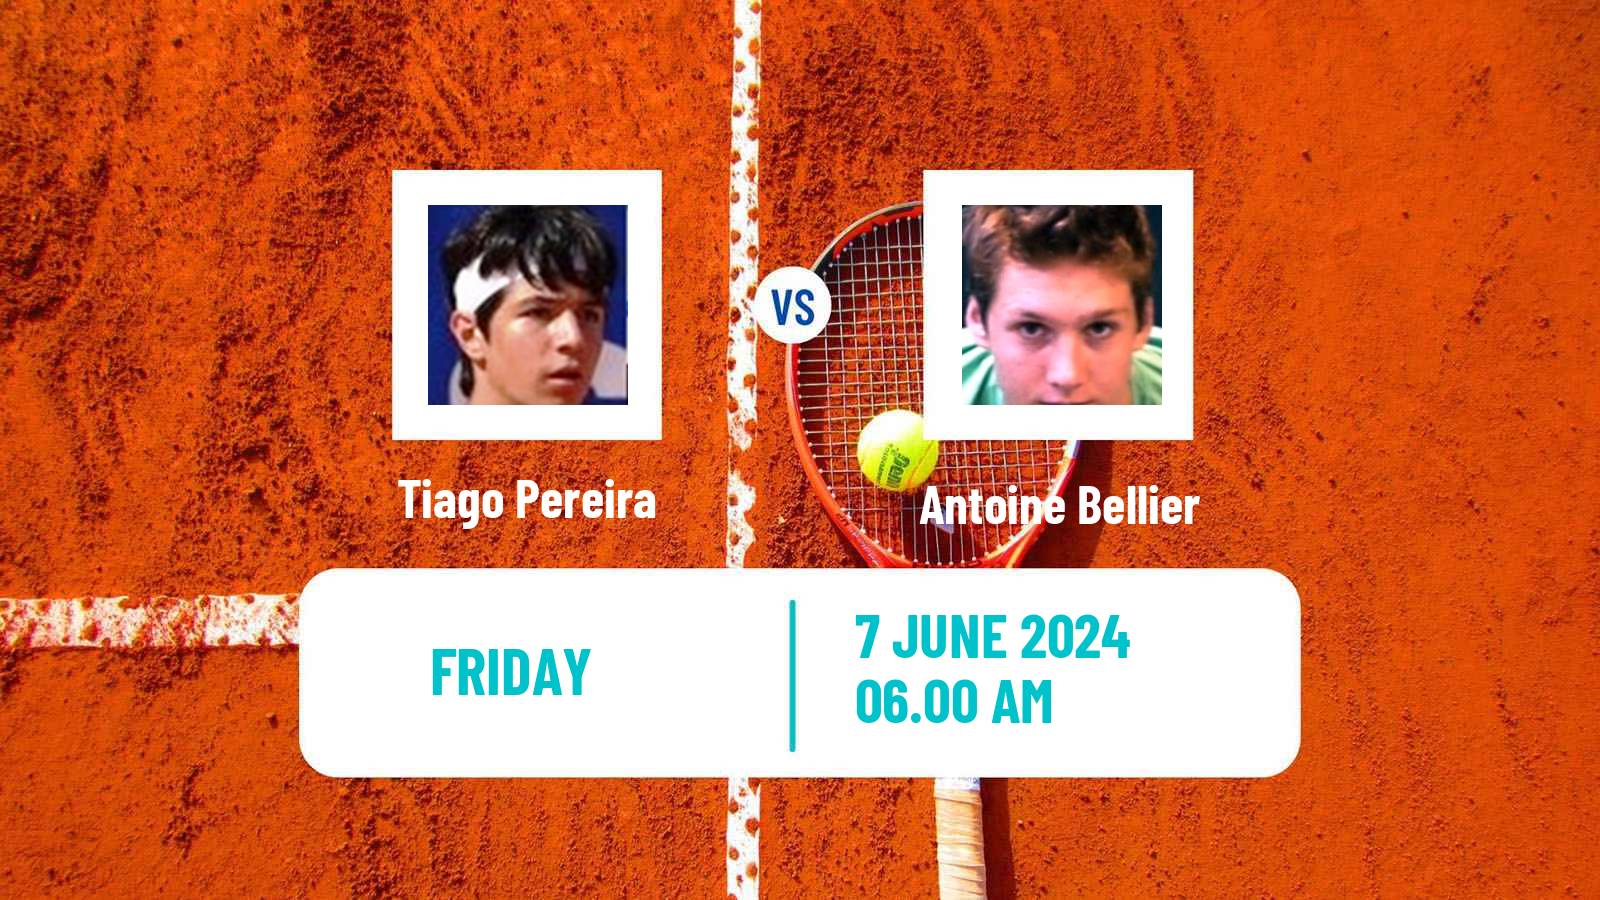 Tennis ITF M25 Setubal Men Tiago Pereira - Antoine Bellier